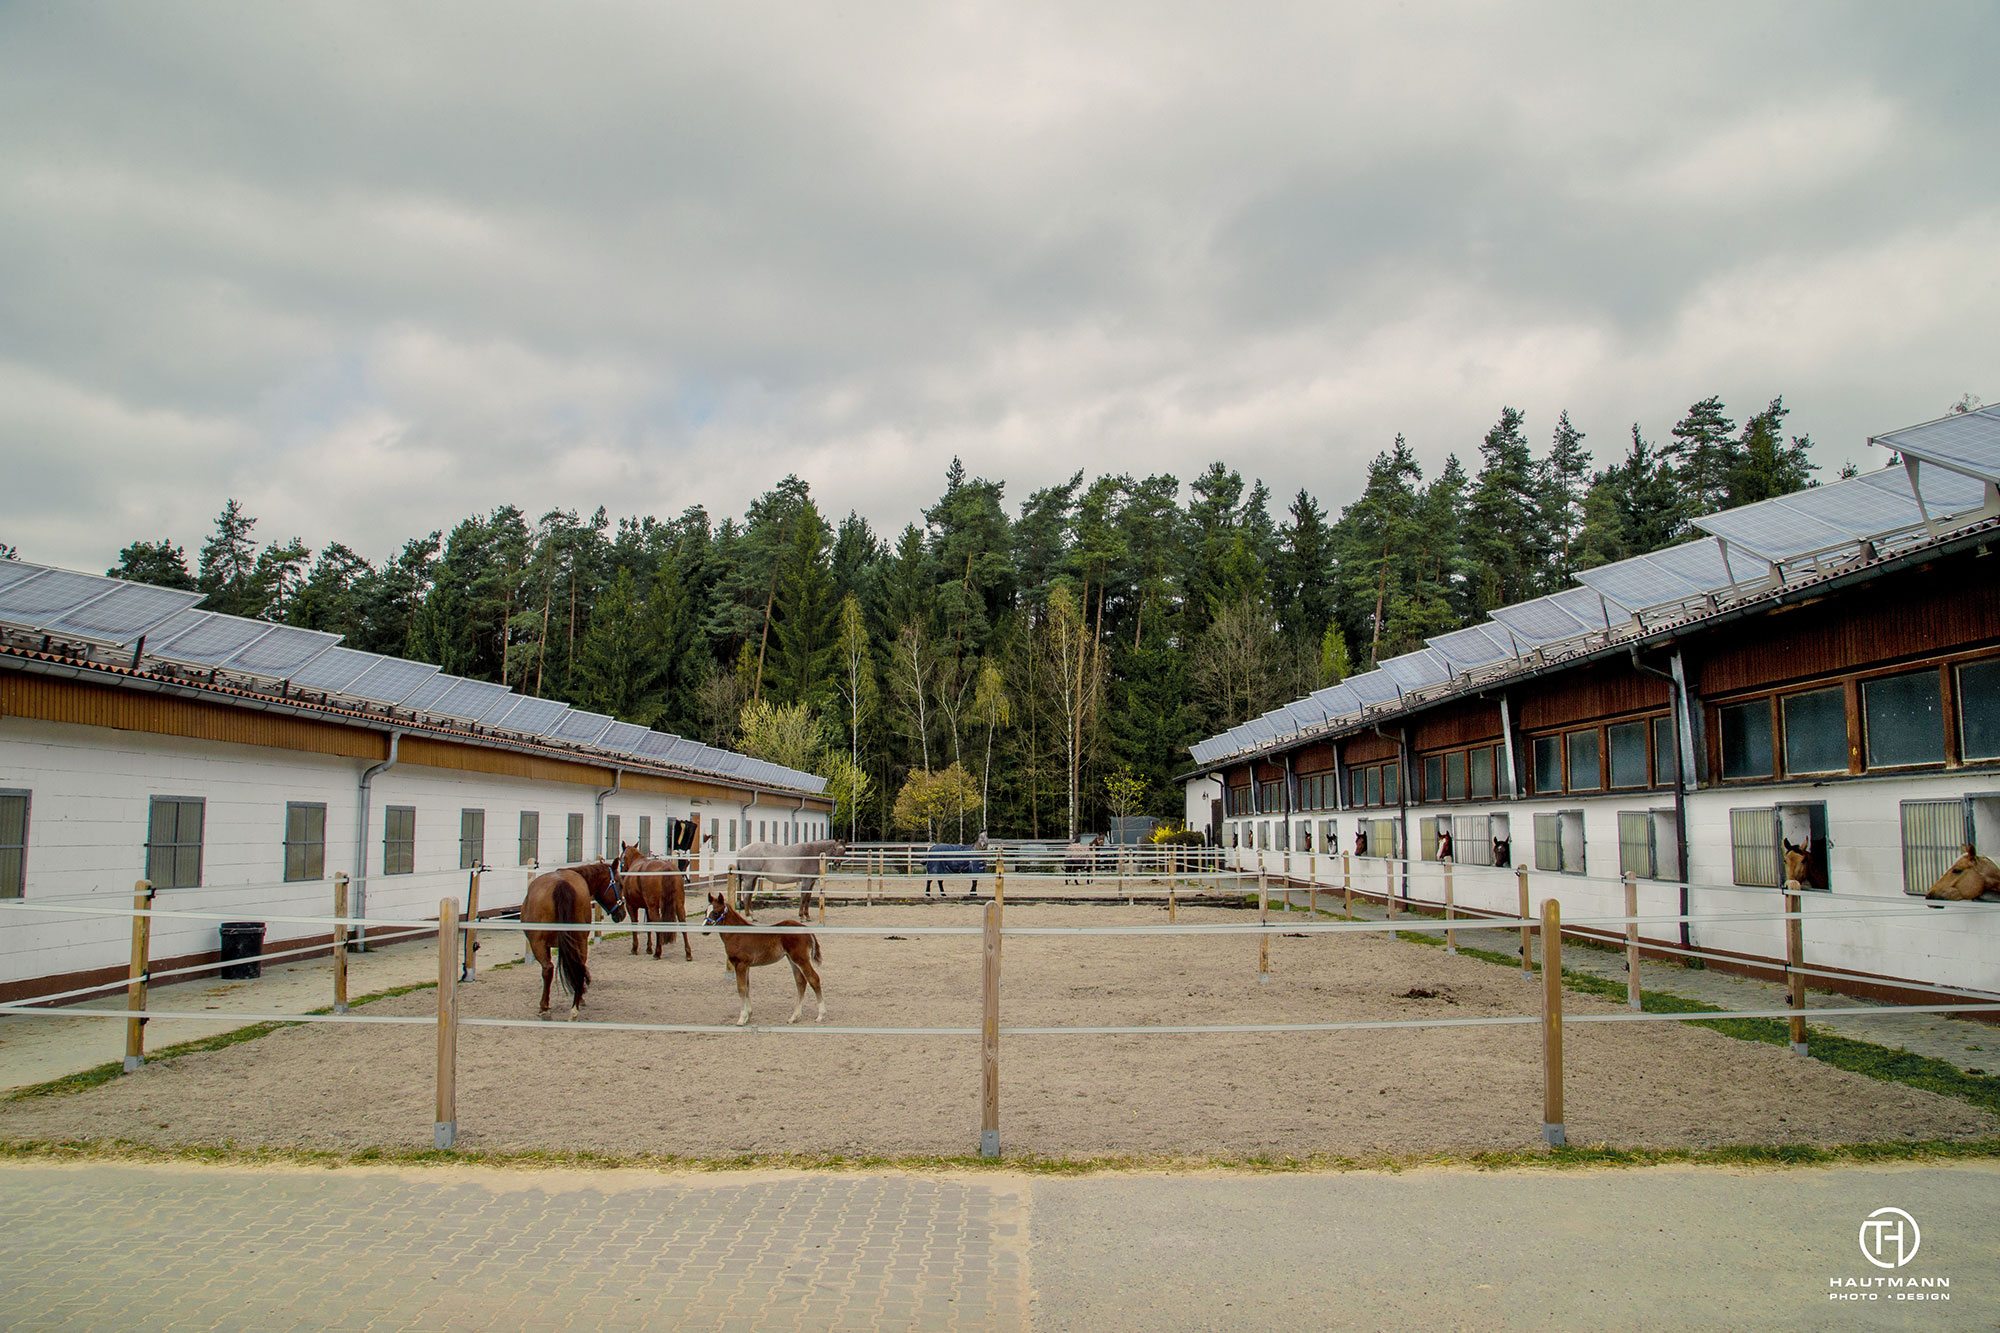 Paddocs Horse base Schnaittach